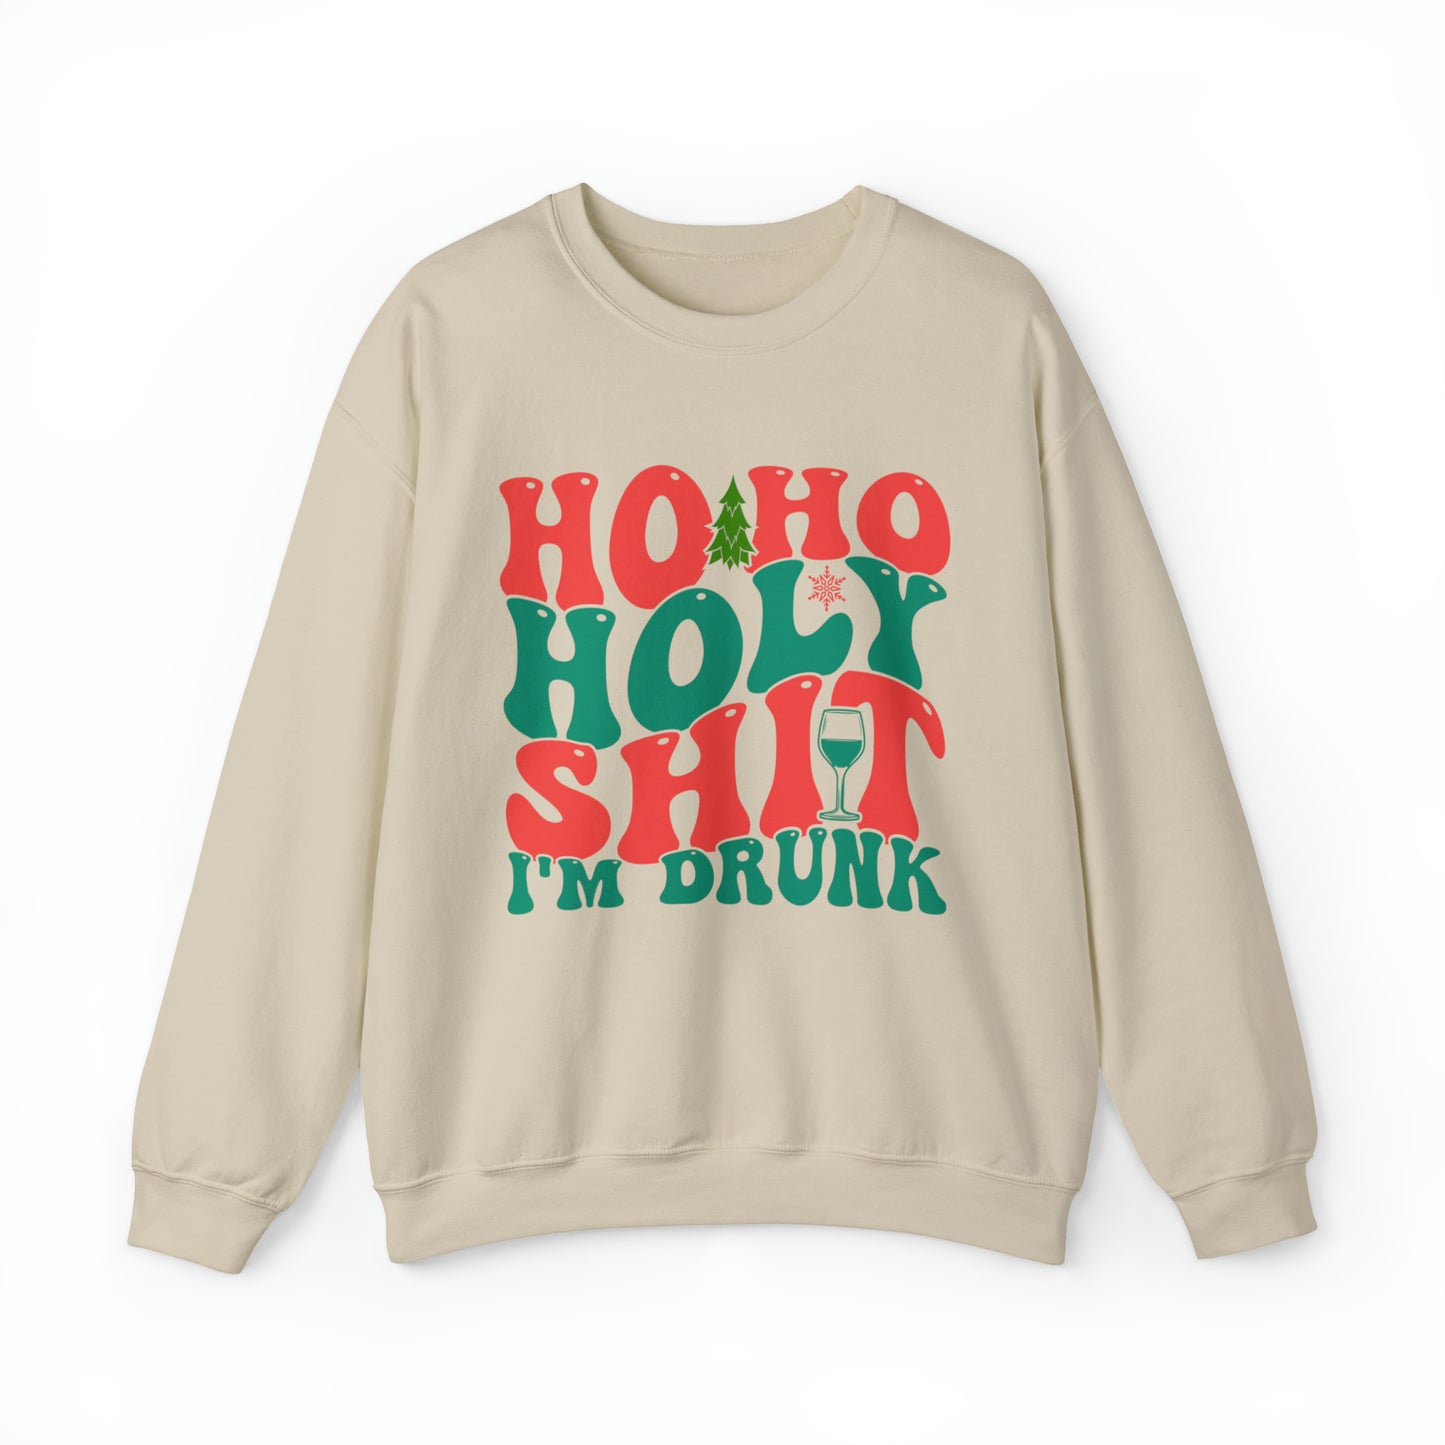 HO HO HO I'm drunk Women's and Men's Christmas Crewneck Sweatshirt